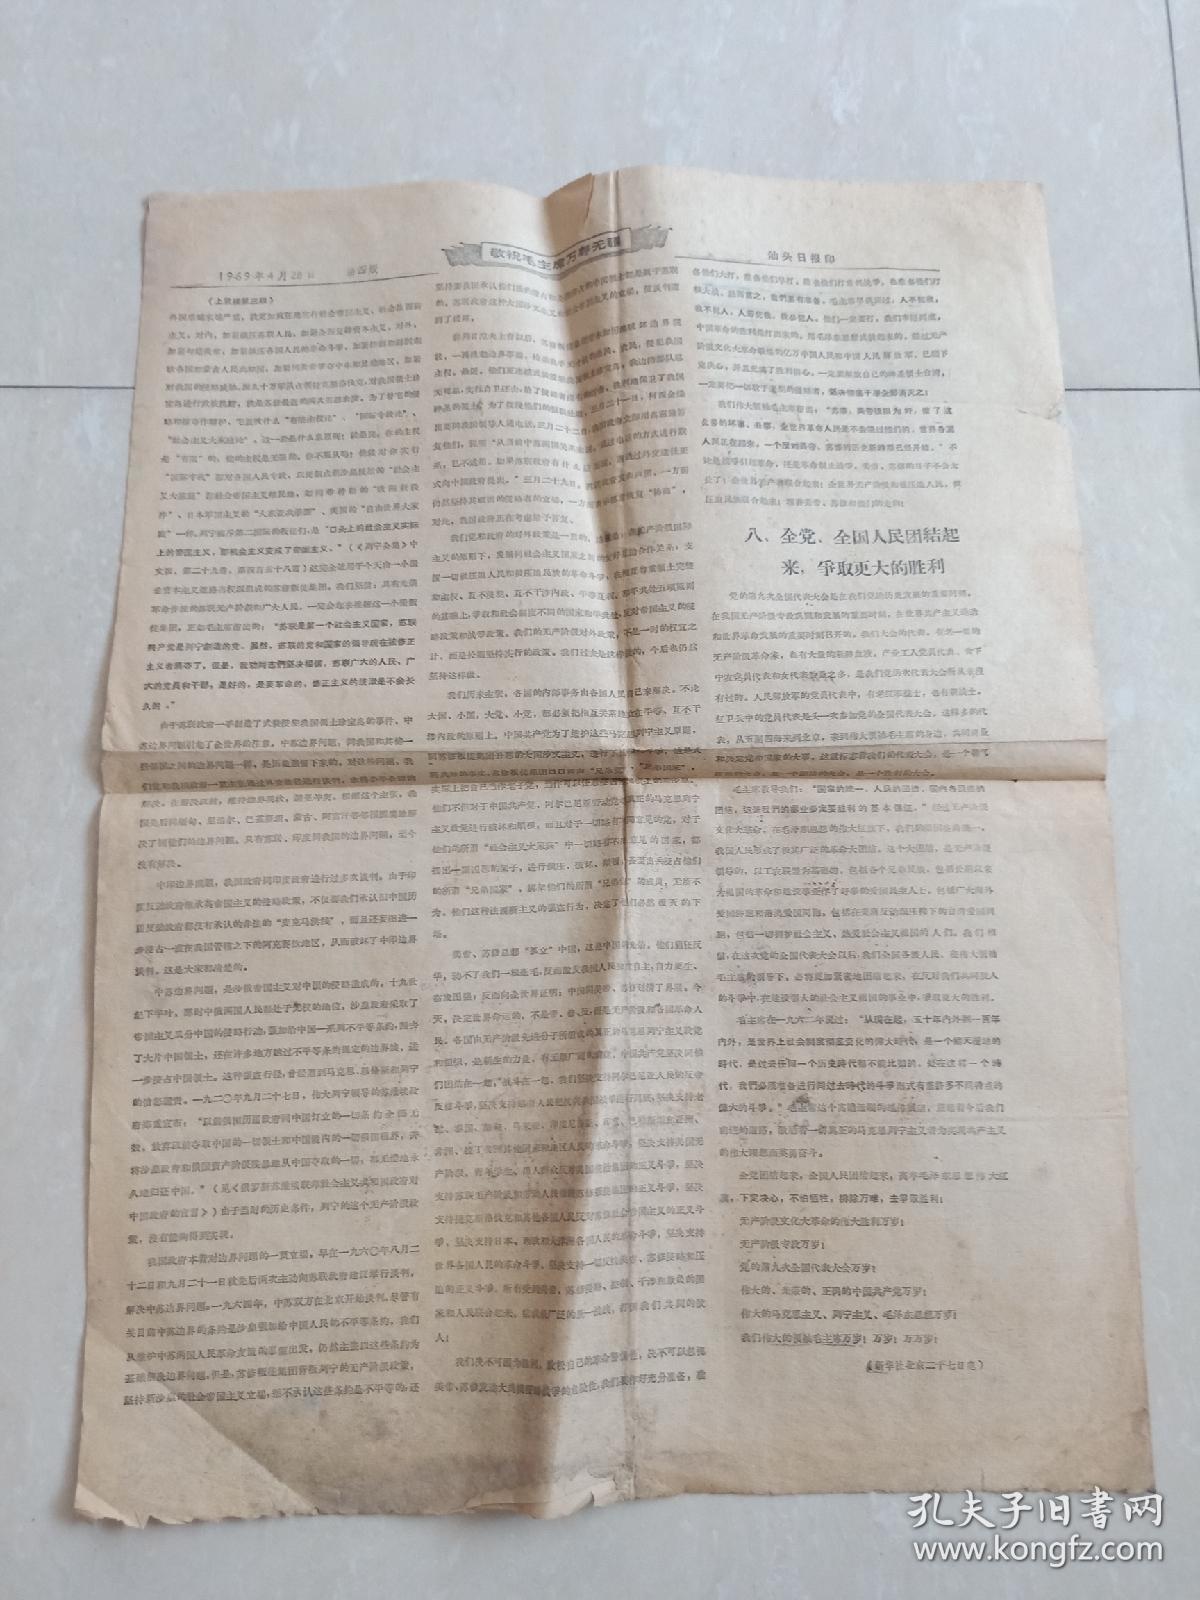 【** 】 1969年4月28日 汕头日报印 《林彪在中共九大上的报告 》 没有期号 好象是号外